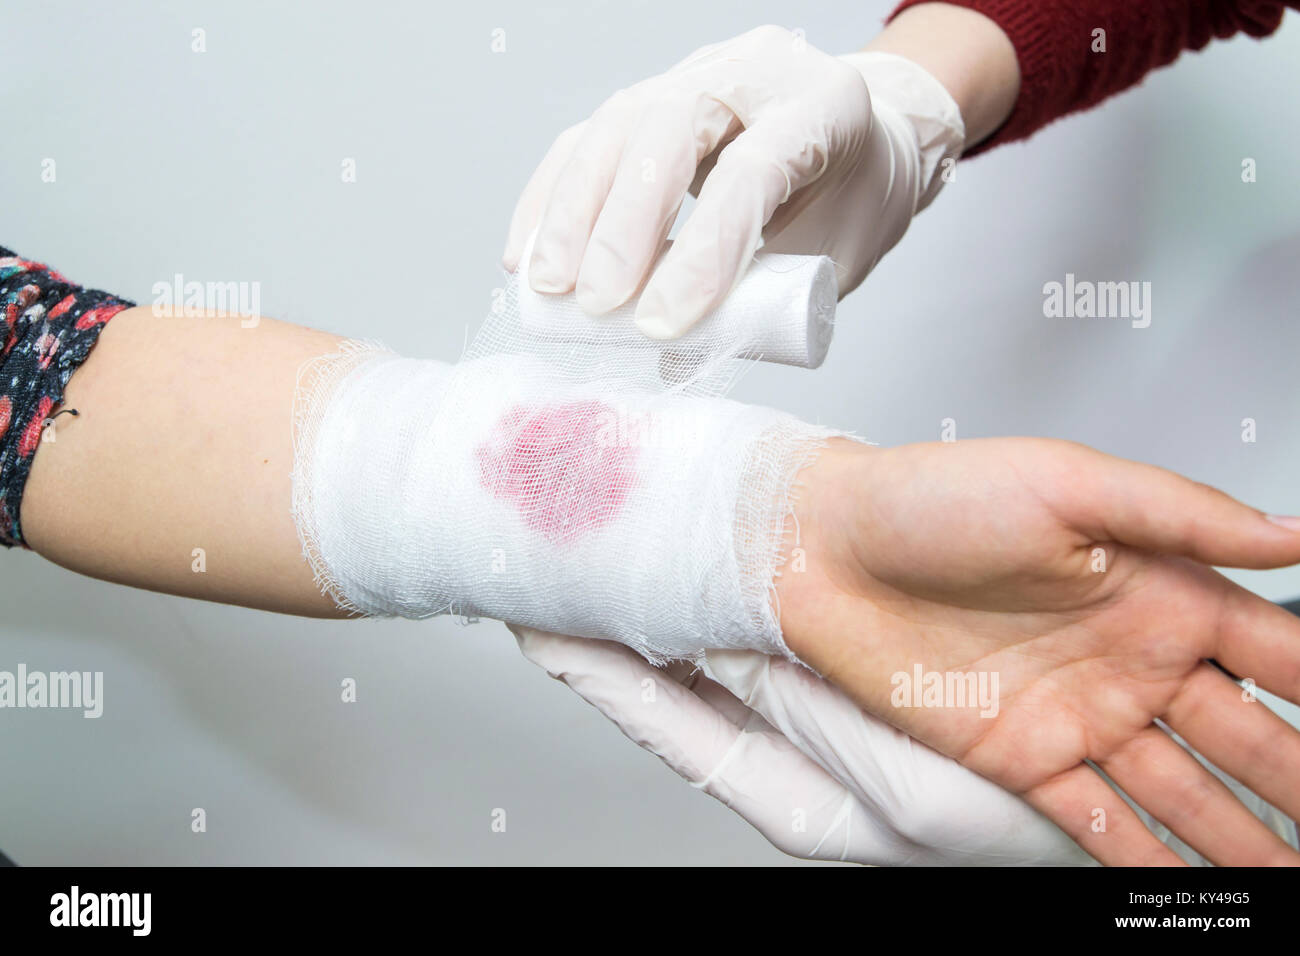 Bandagieren eine blutende Verletzung am Unterarm mit einem weißen Binde Stockfoto